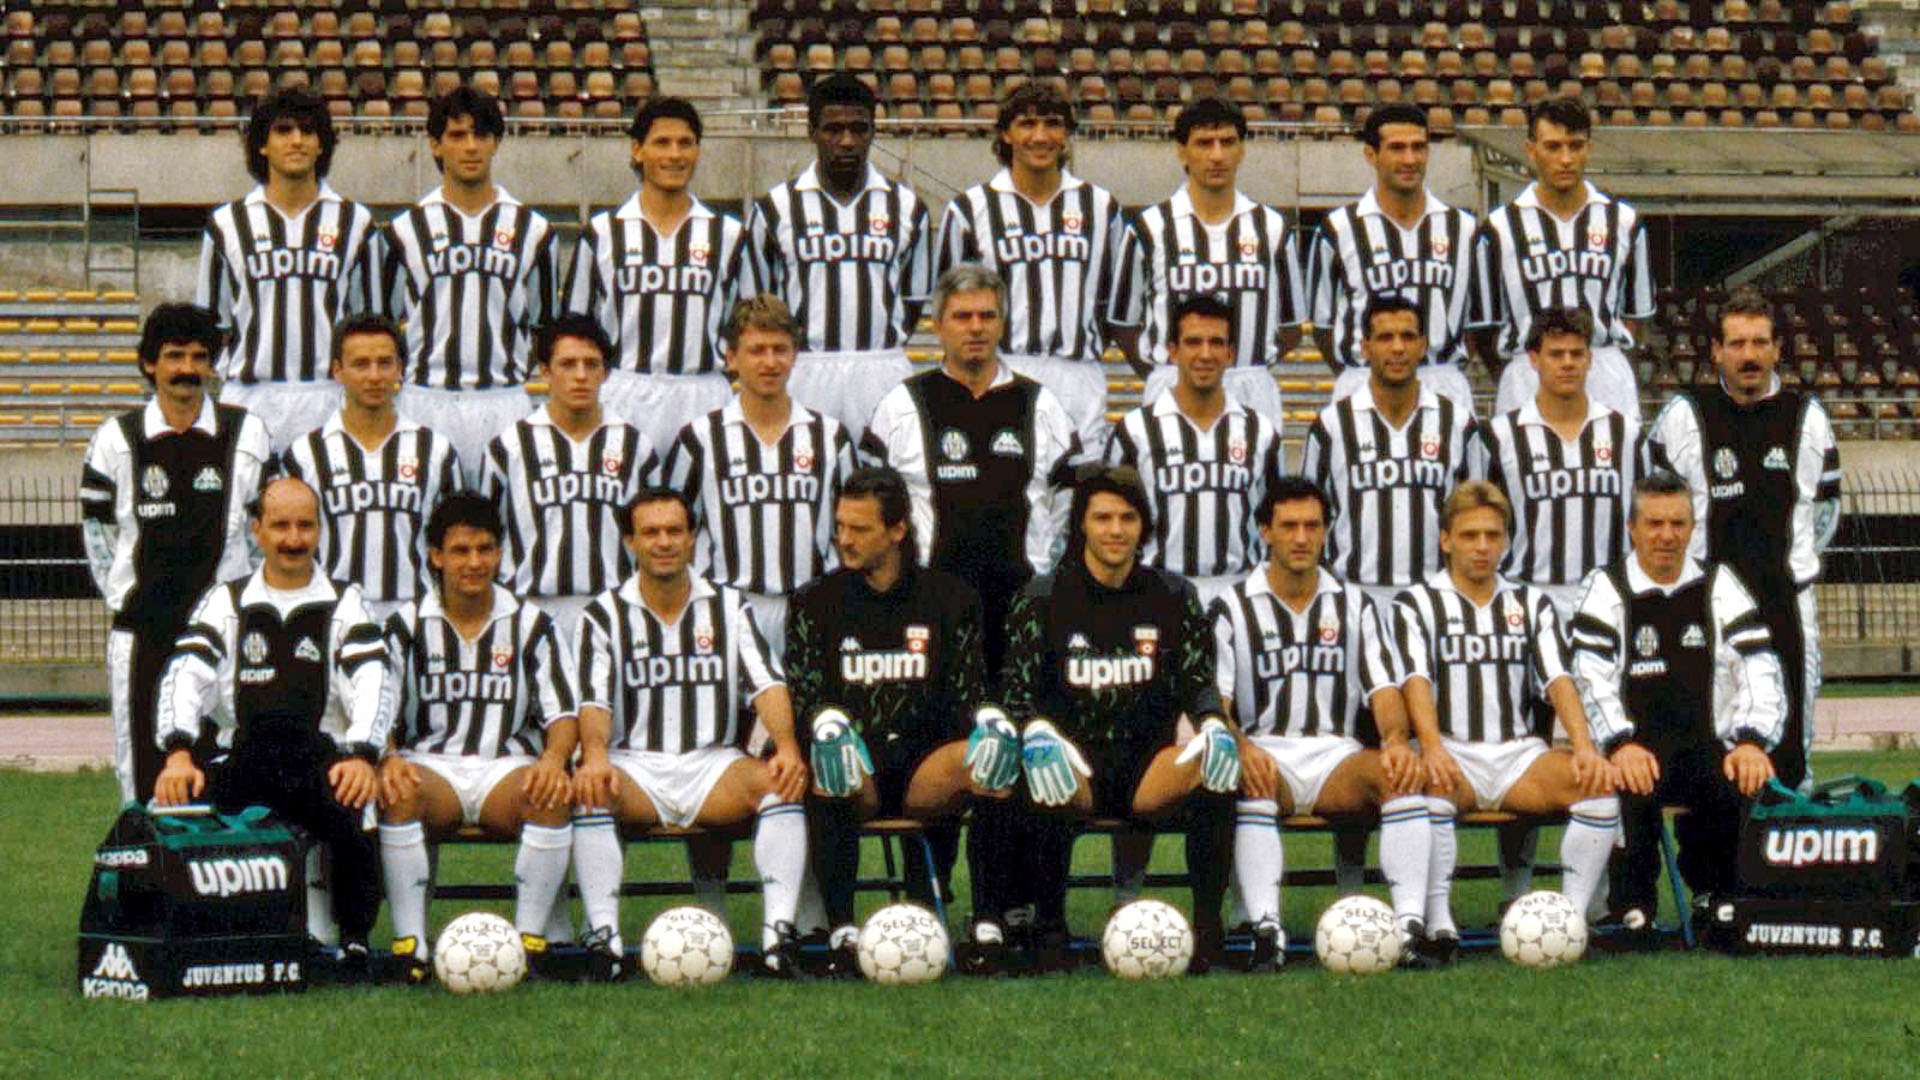 Juventus team 1990/91